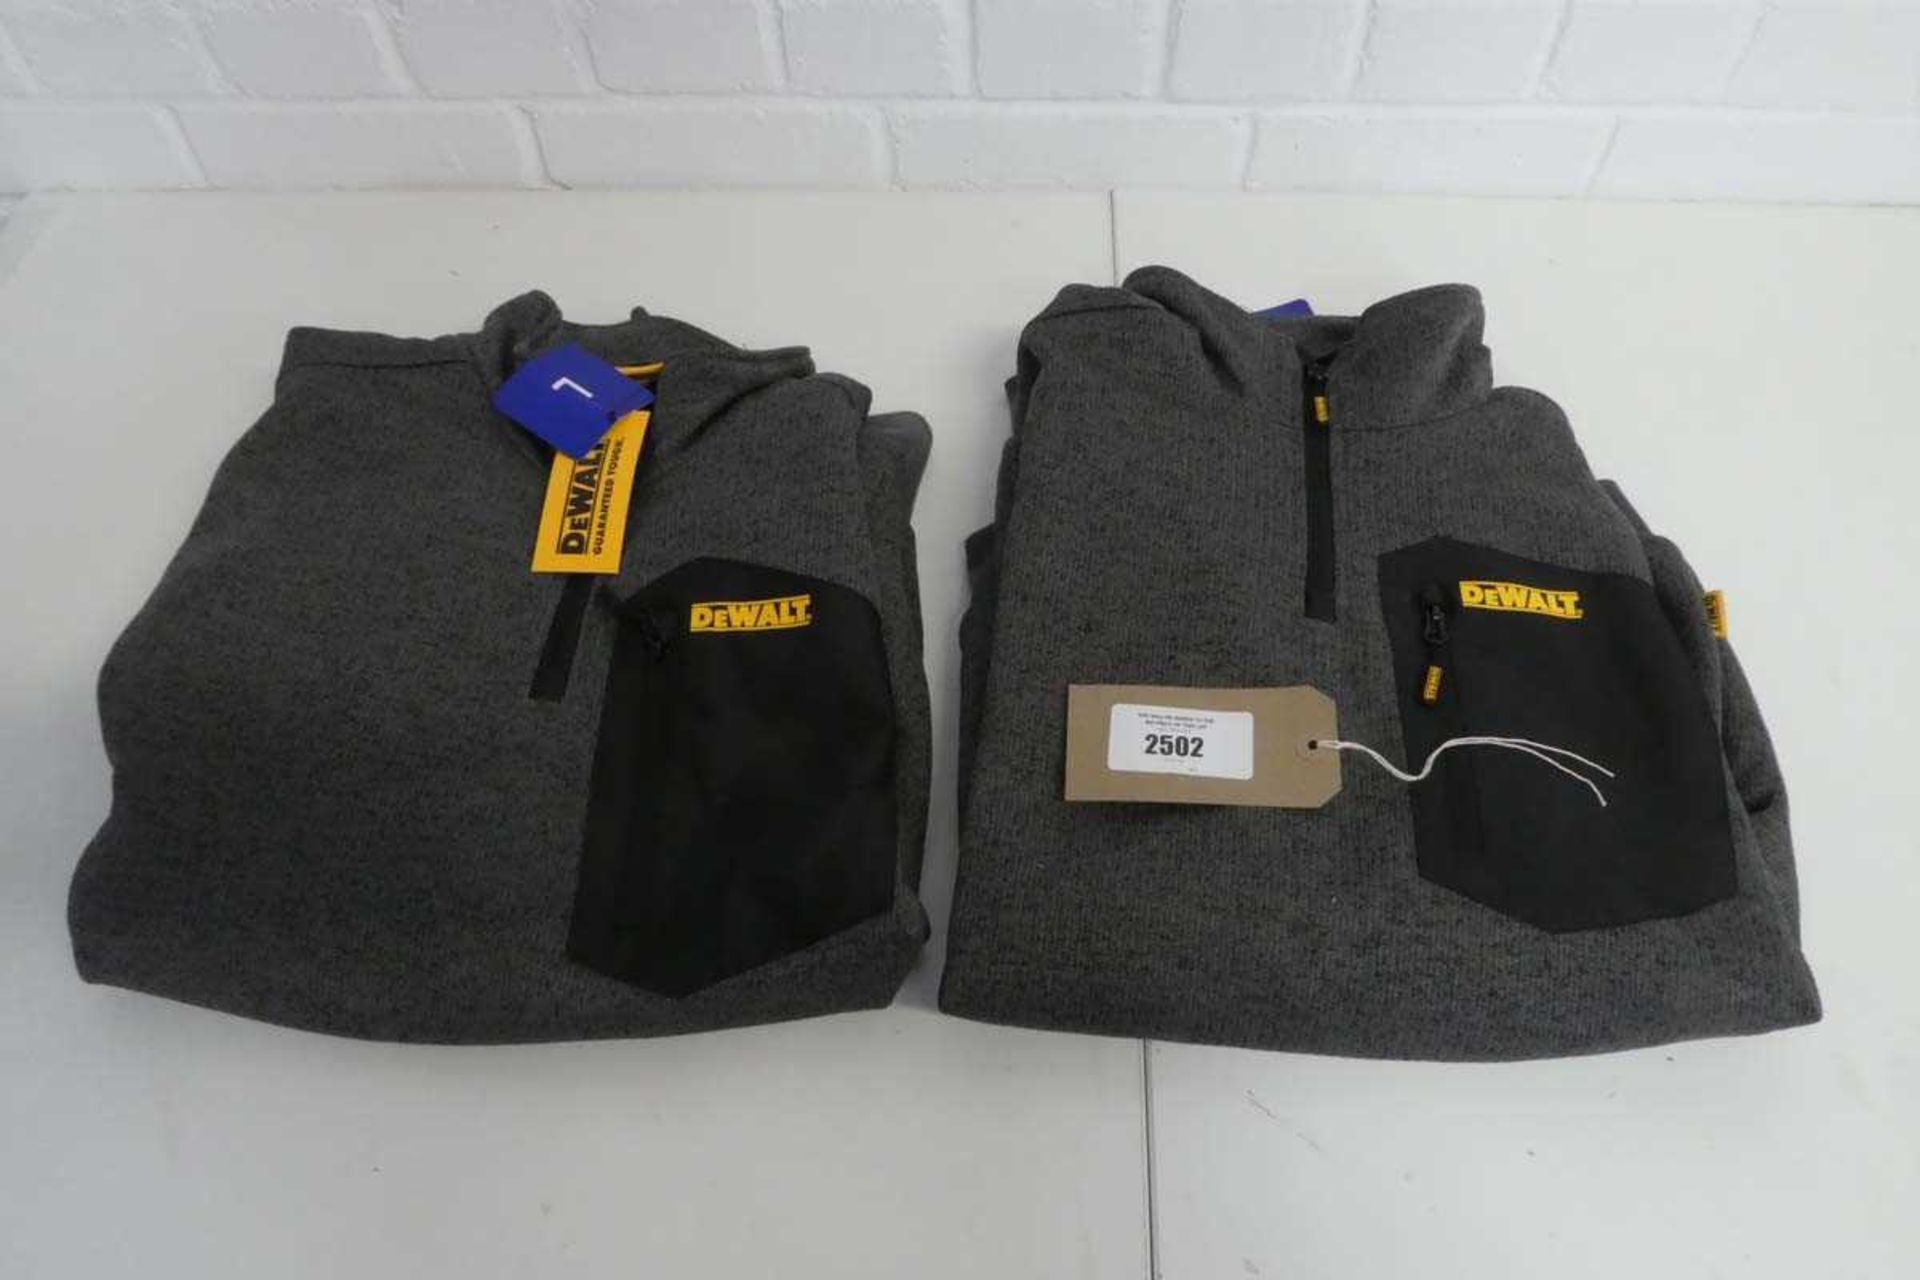 +VAT 2 DeWalt 1/4 zip work fleeces (both size L), both in grey